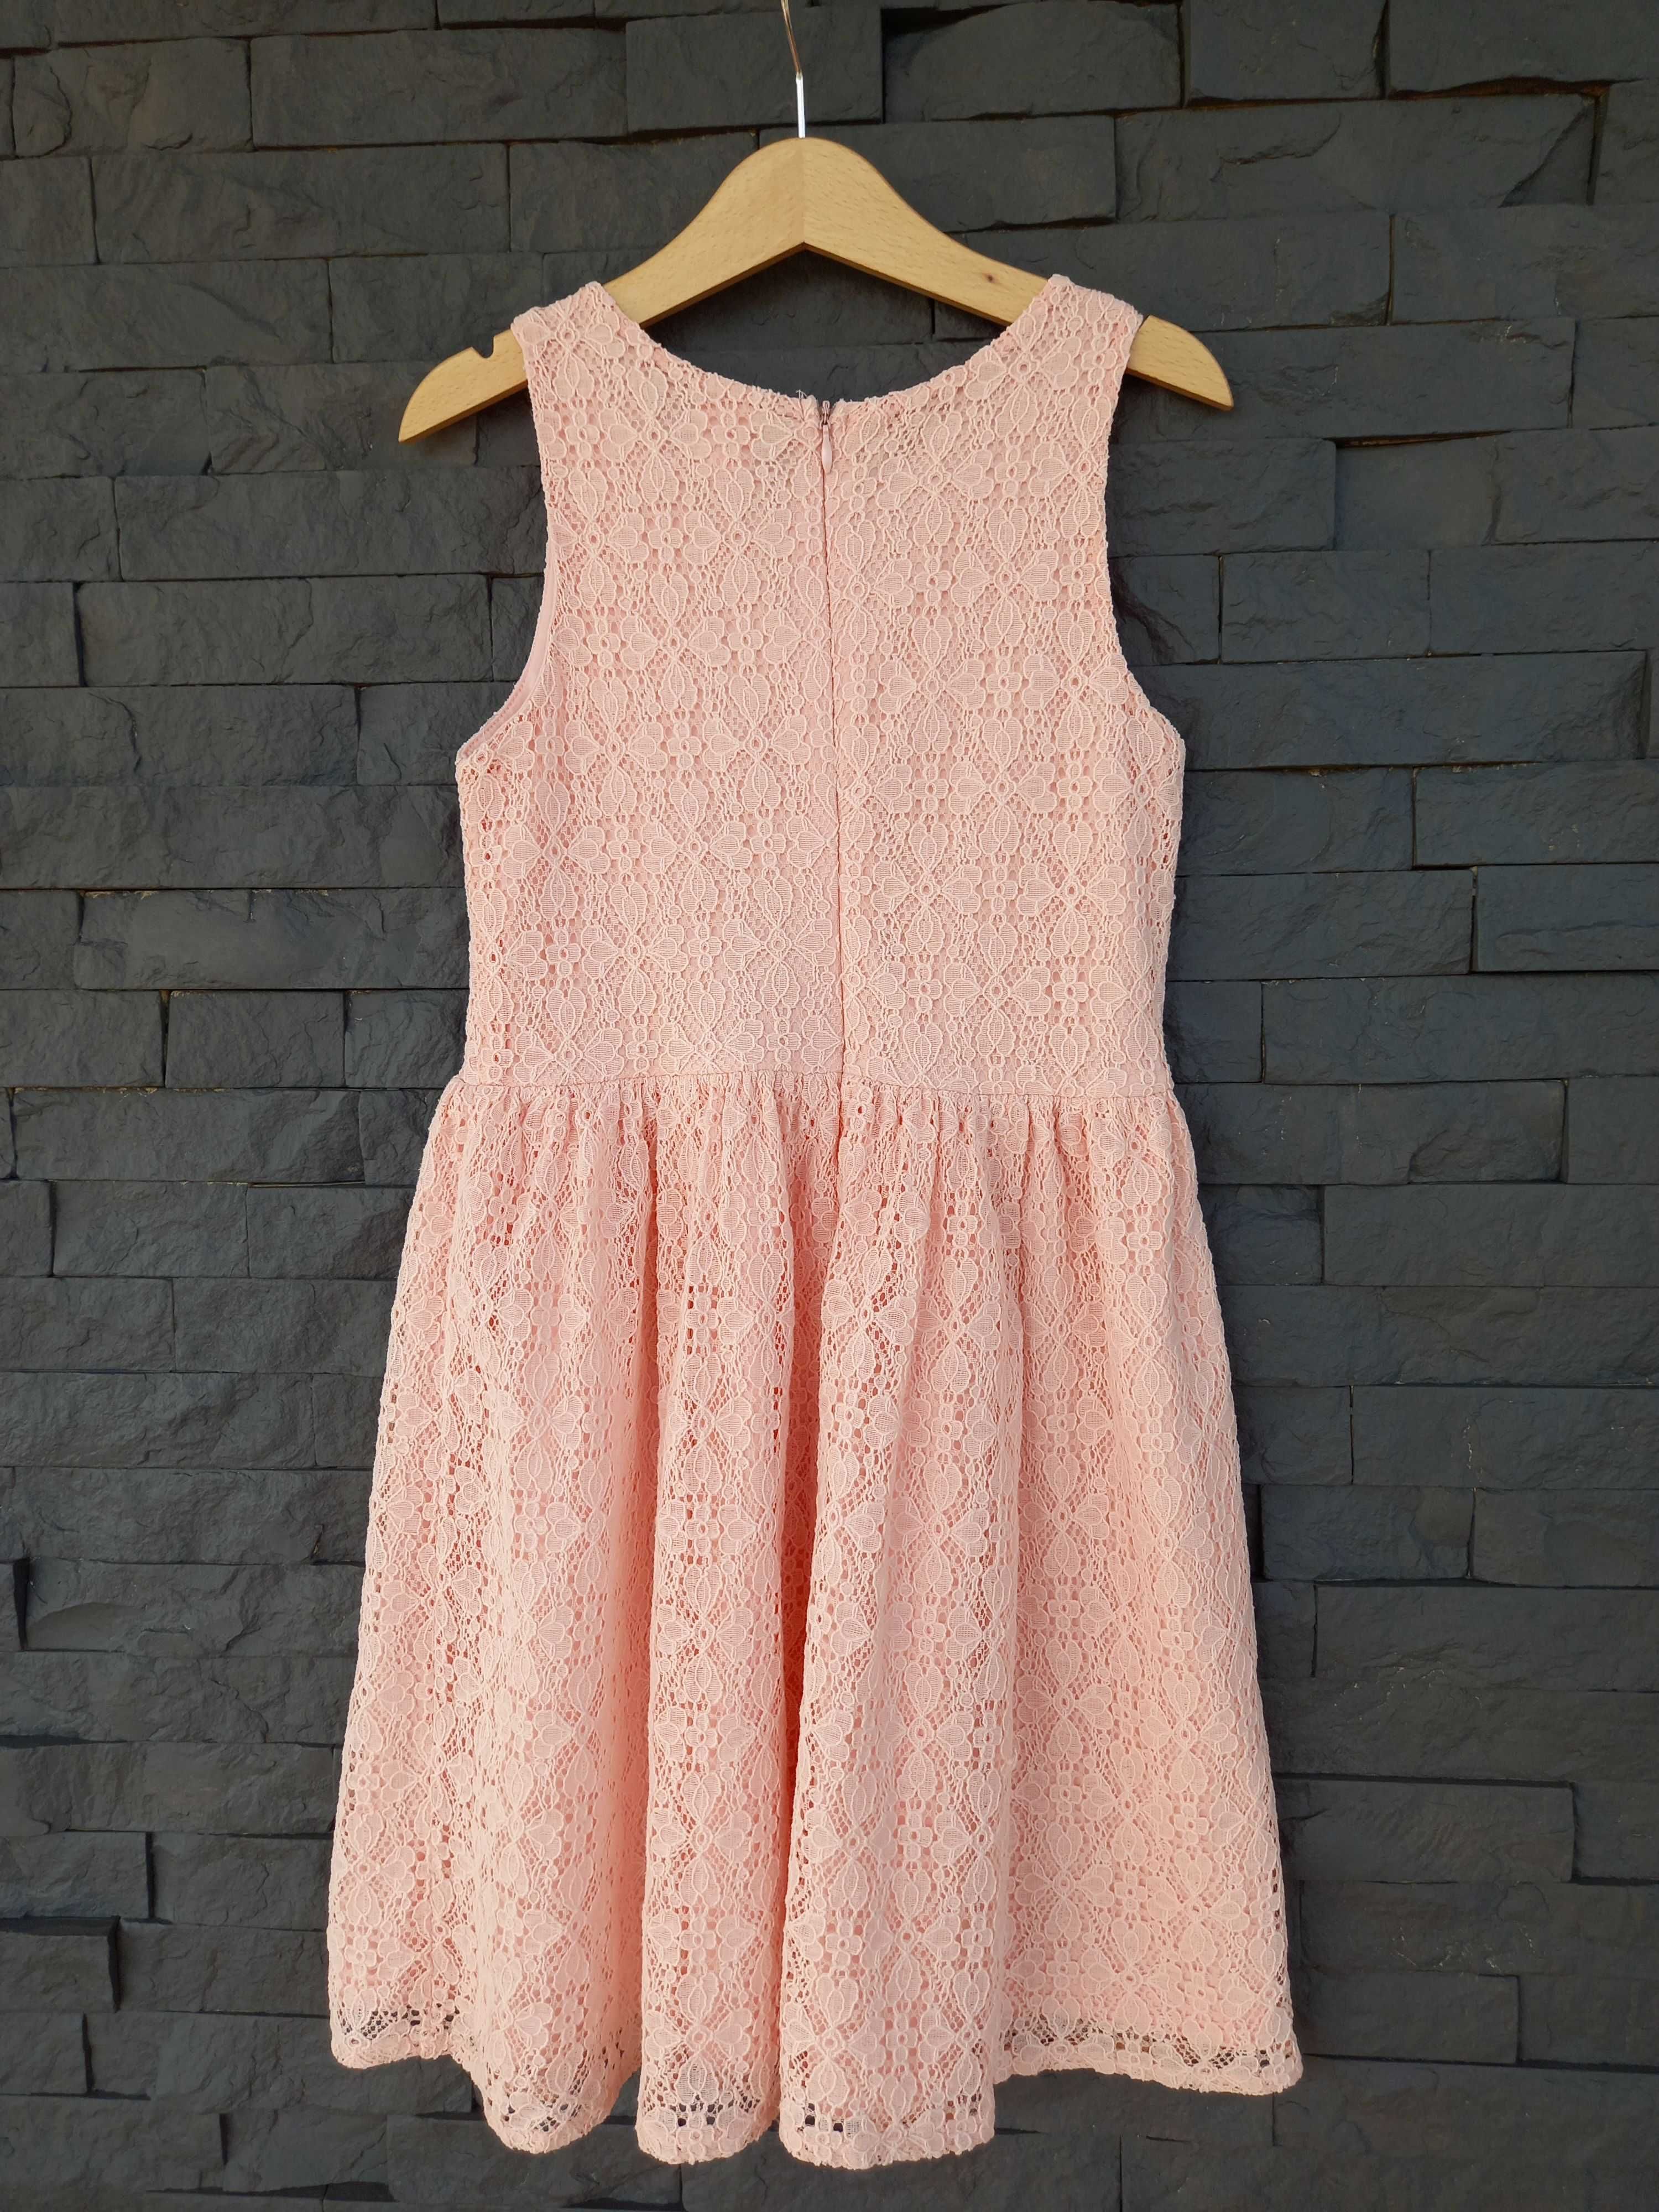 Sukienka koronkowa różowa Smyk Cool Club r. 122 cm